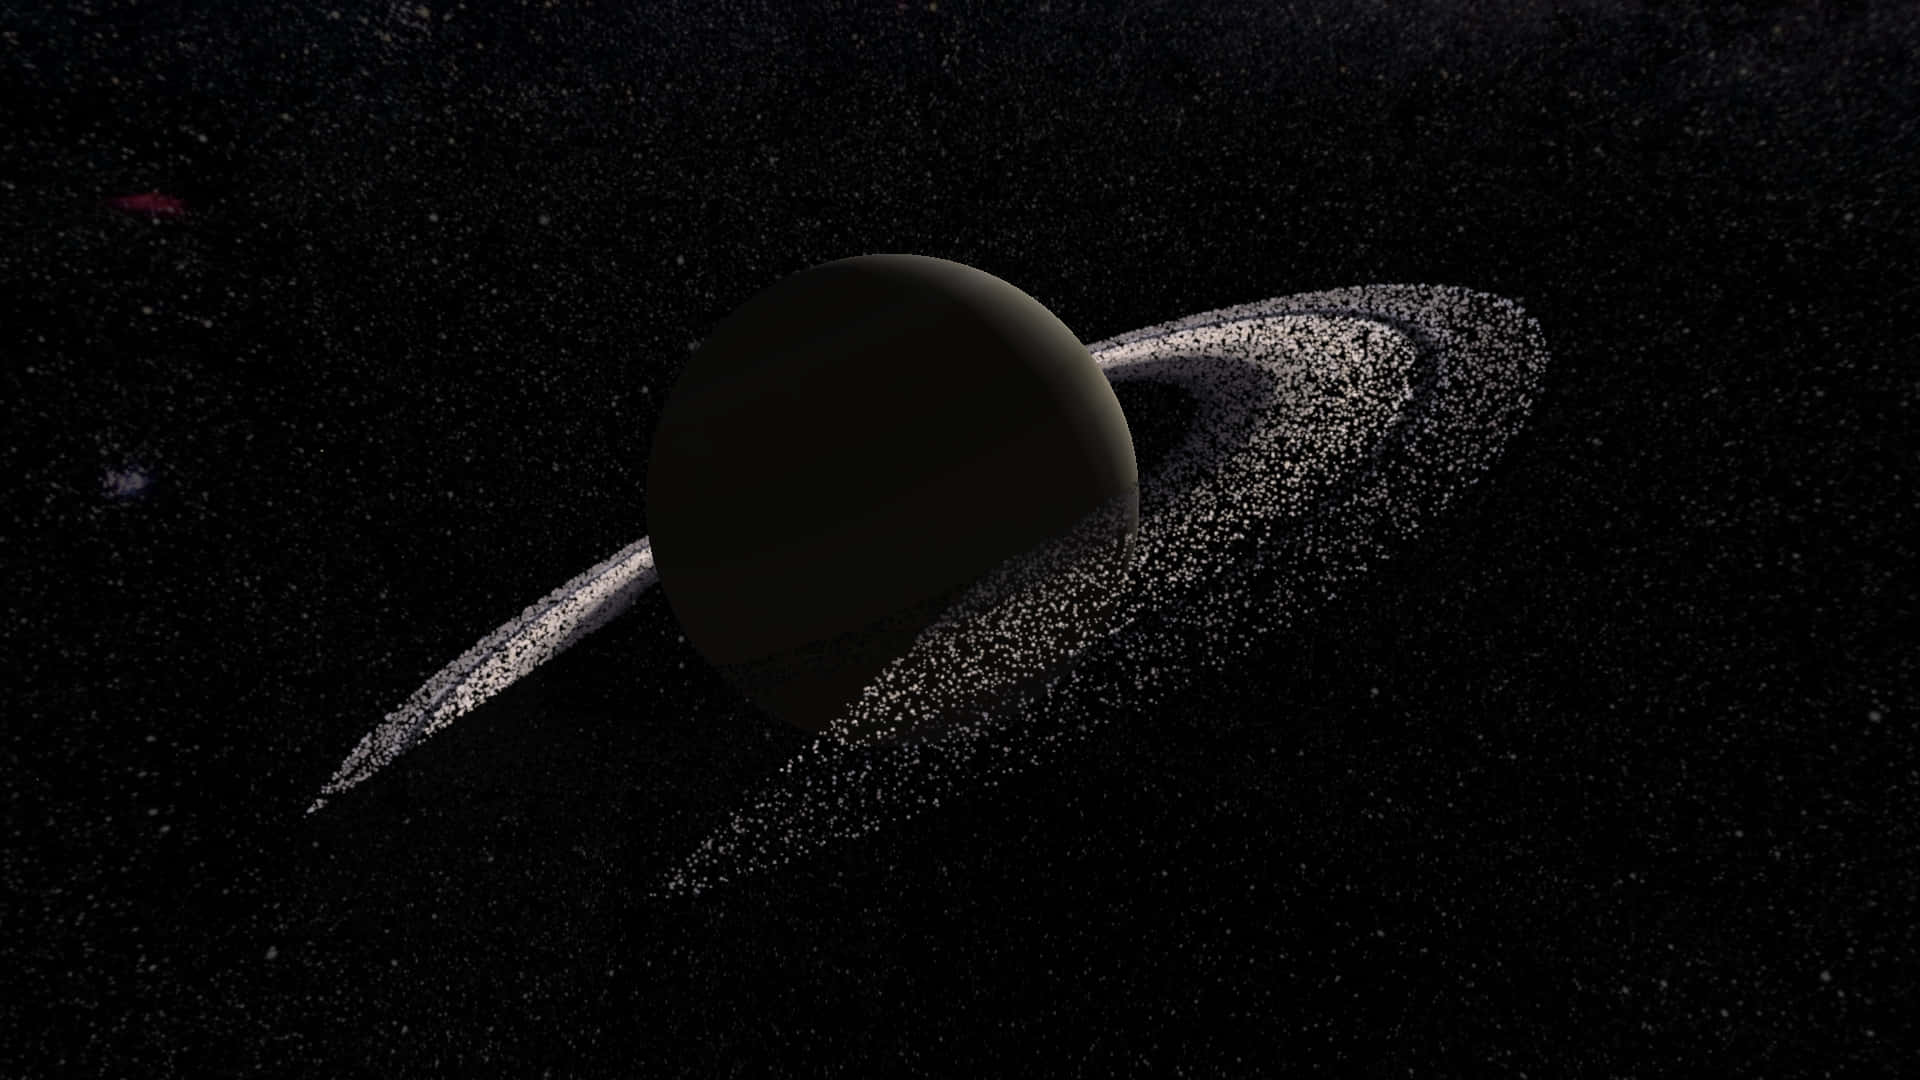 Increíblevista Del Majestuoso Saturno En El Espacio.